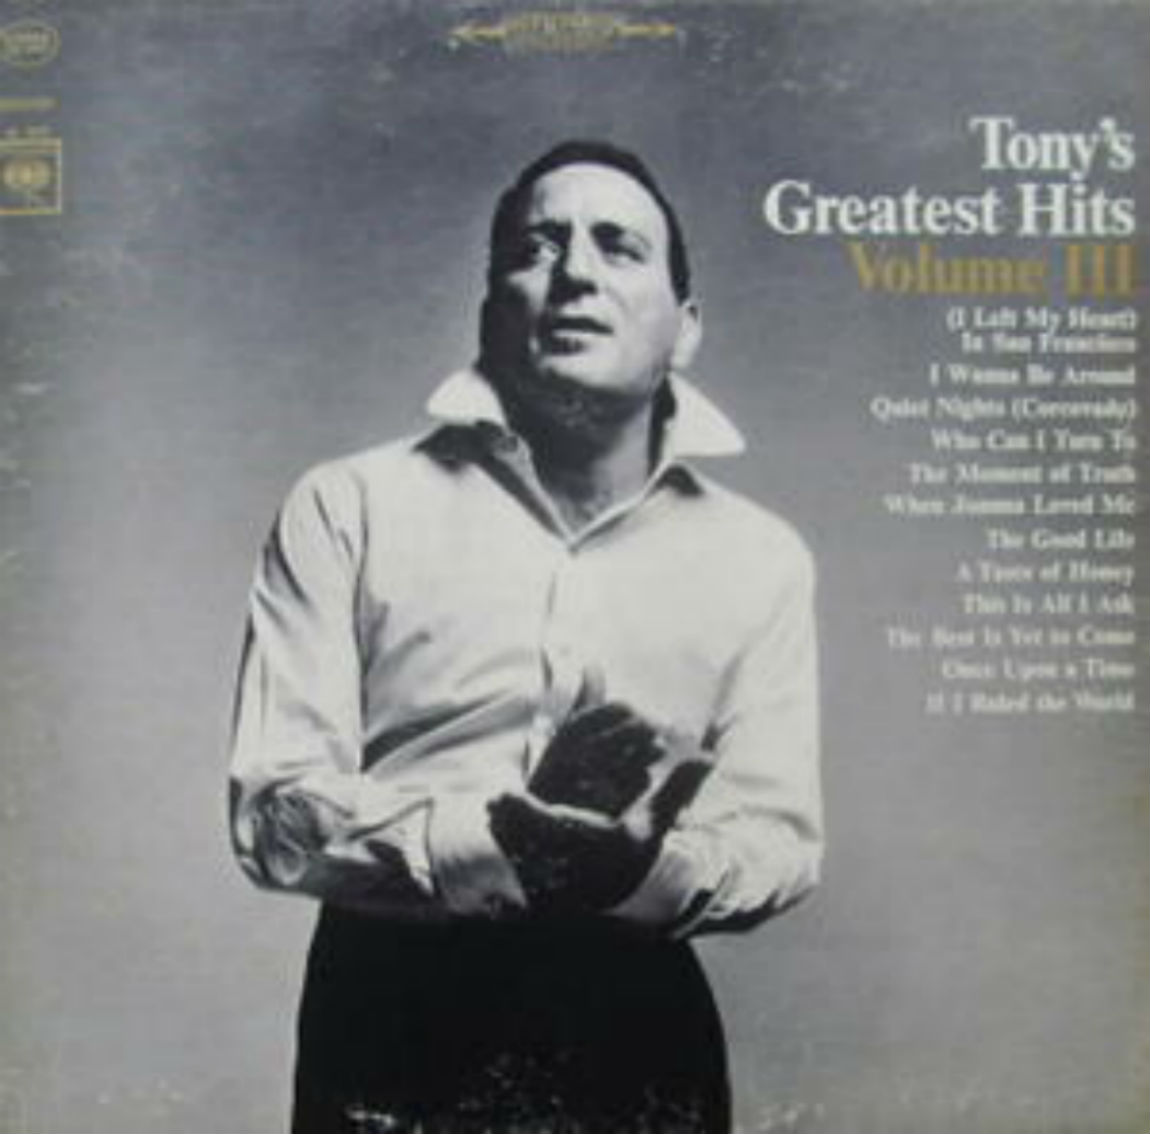 Tony Bennett / Tony's Greatest Hits Vol. 3